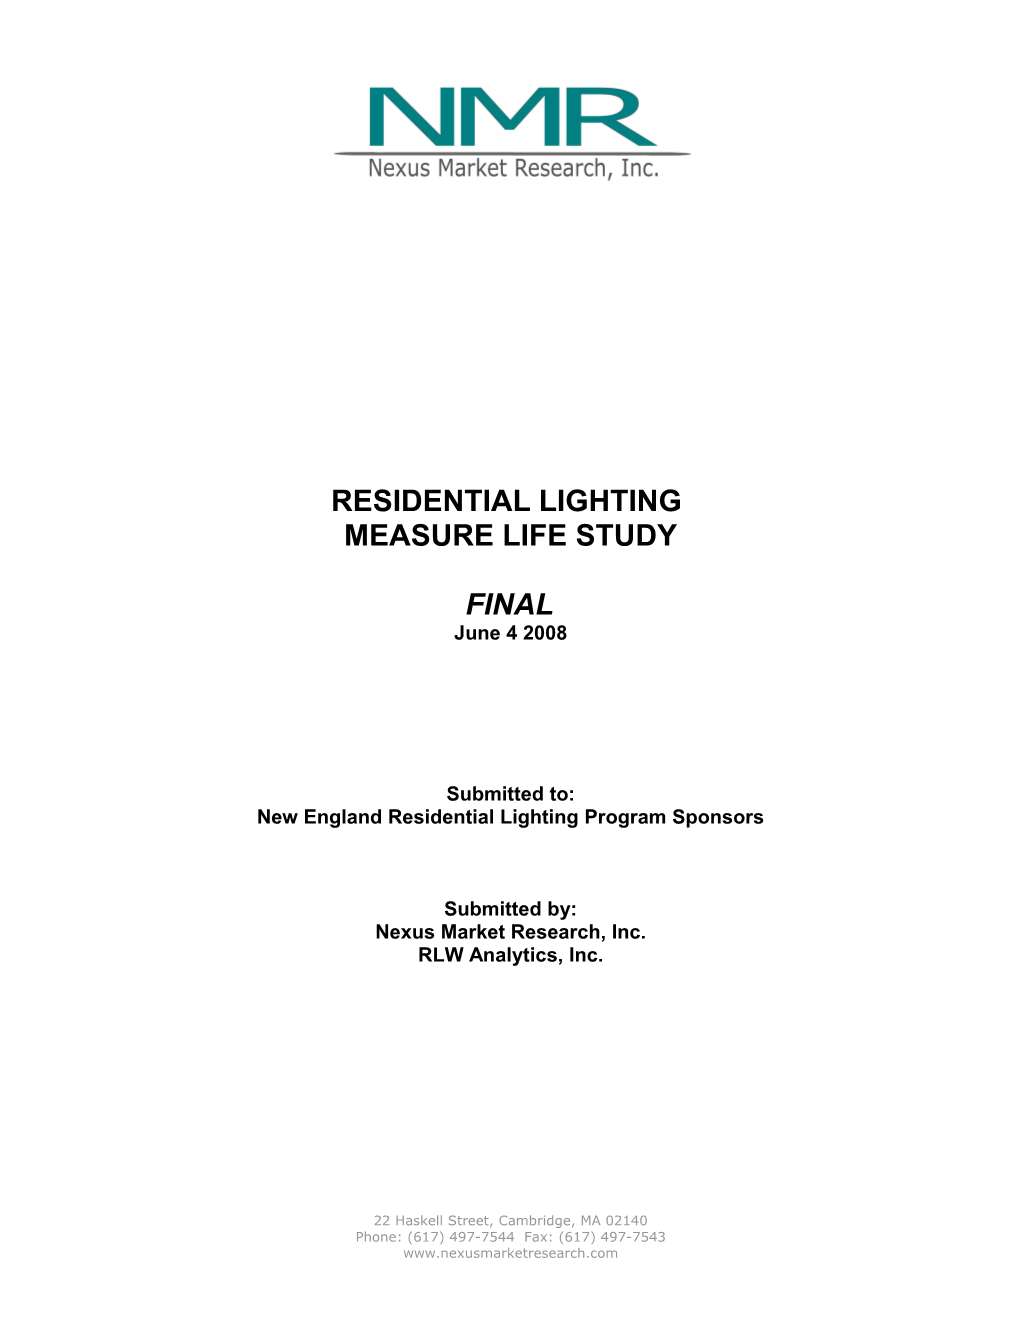 New England Residential Lighting Program Sponsors